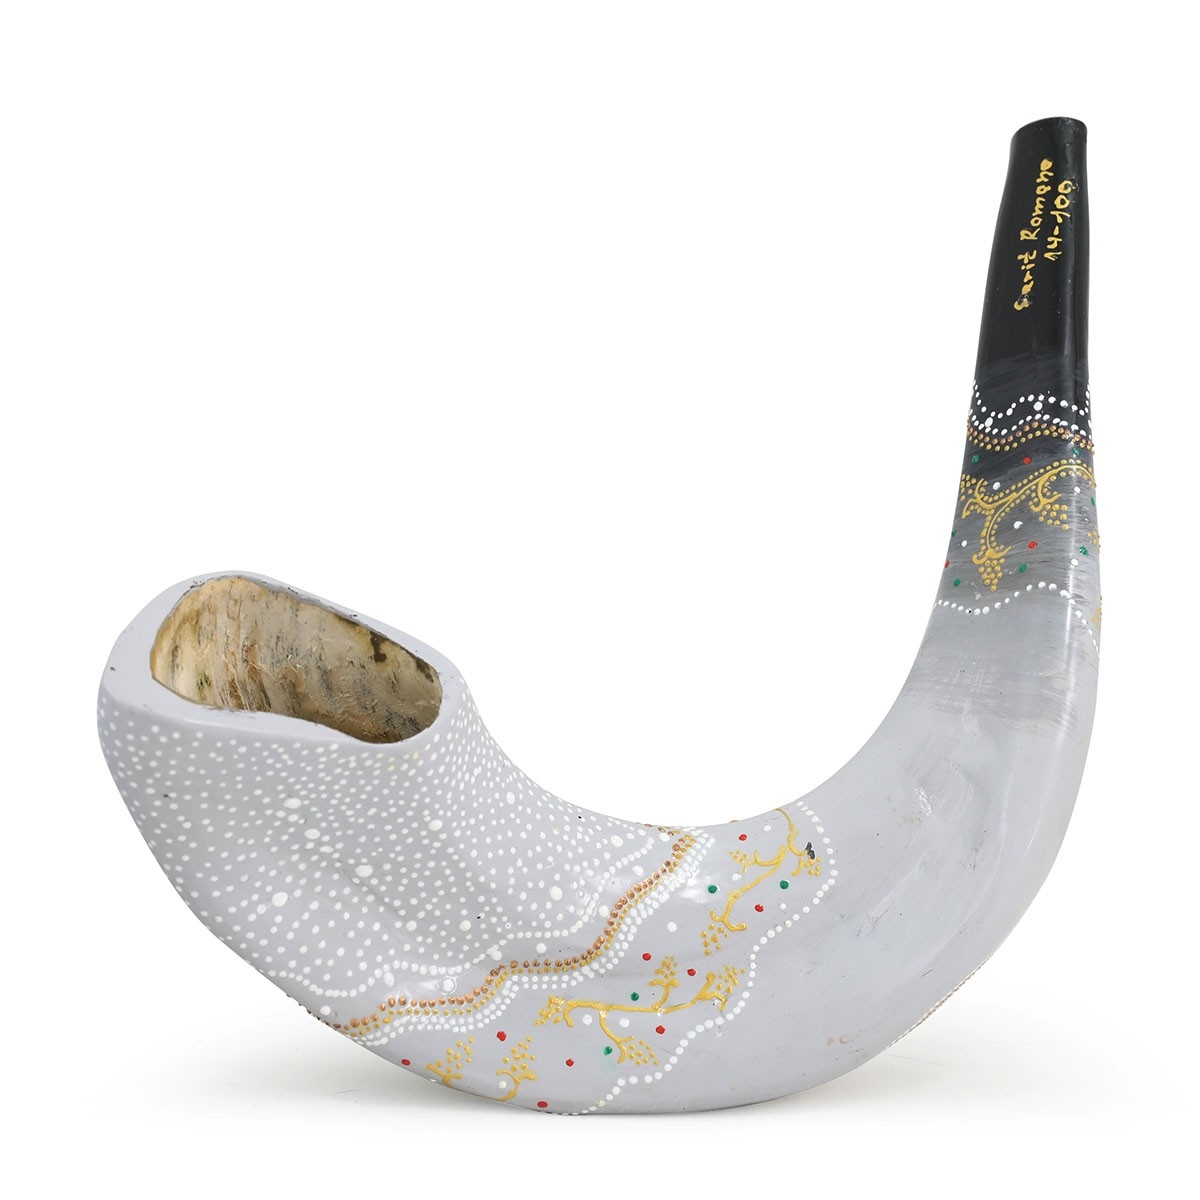 Hand Painted Elegant White and Black Gradient Ram’s Horn Shofar  - 1